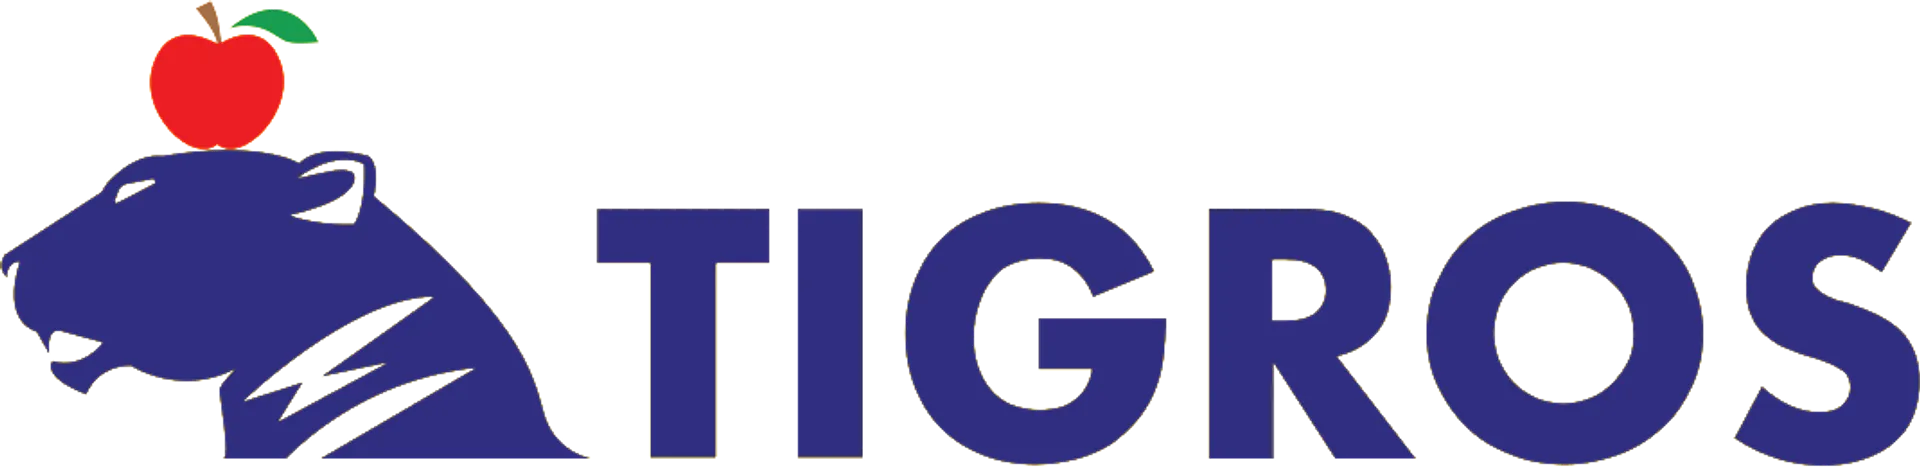 TIGROS logo